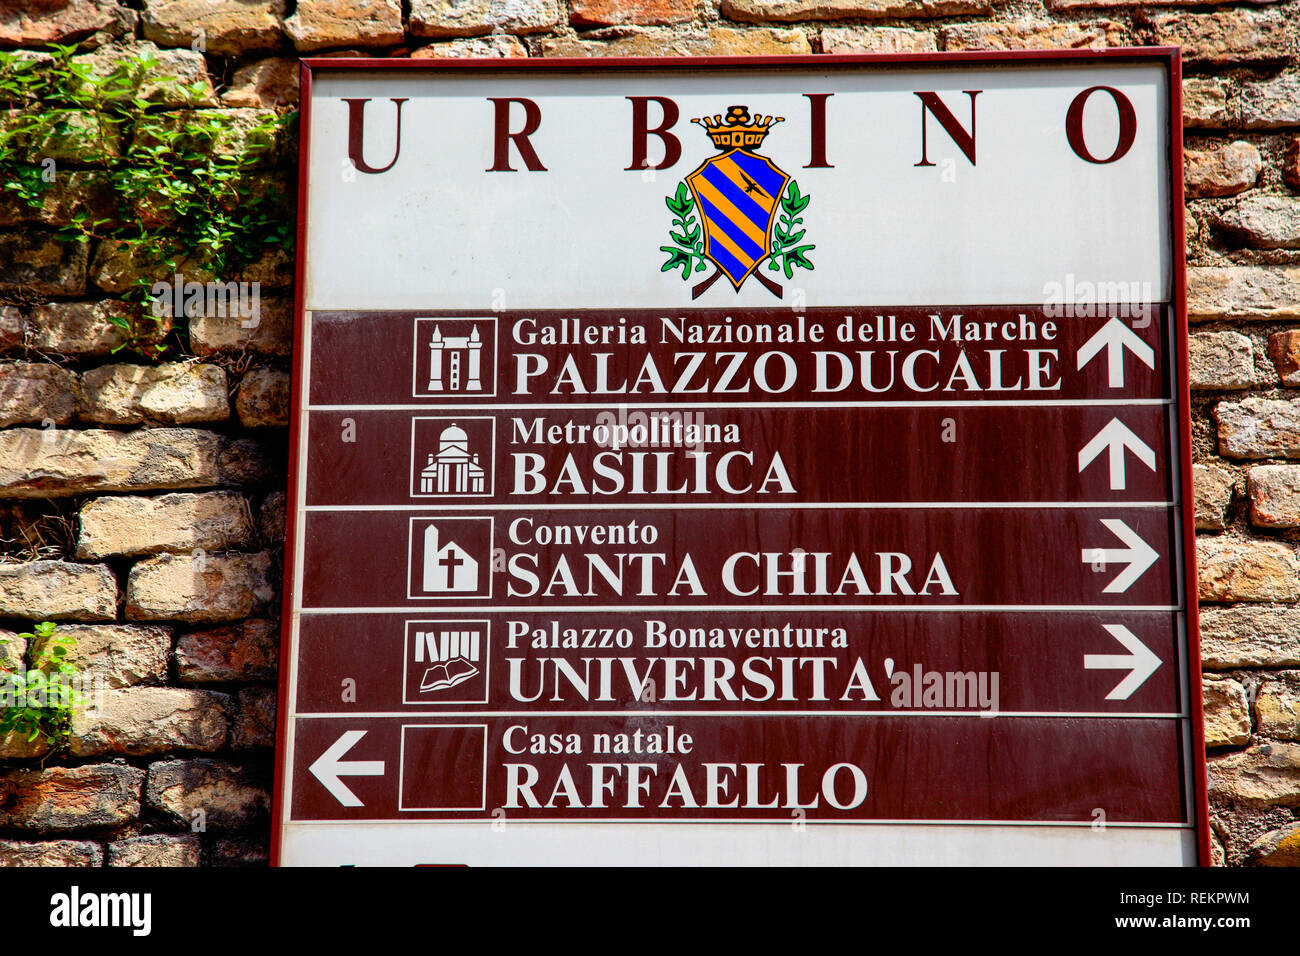 Ein Zeichen mit Wegbeschreibungen zu verschiedenen Sehenswürdigkeiten in Urbino. Stockfoto